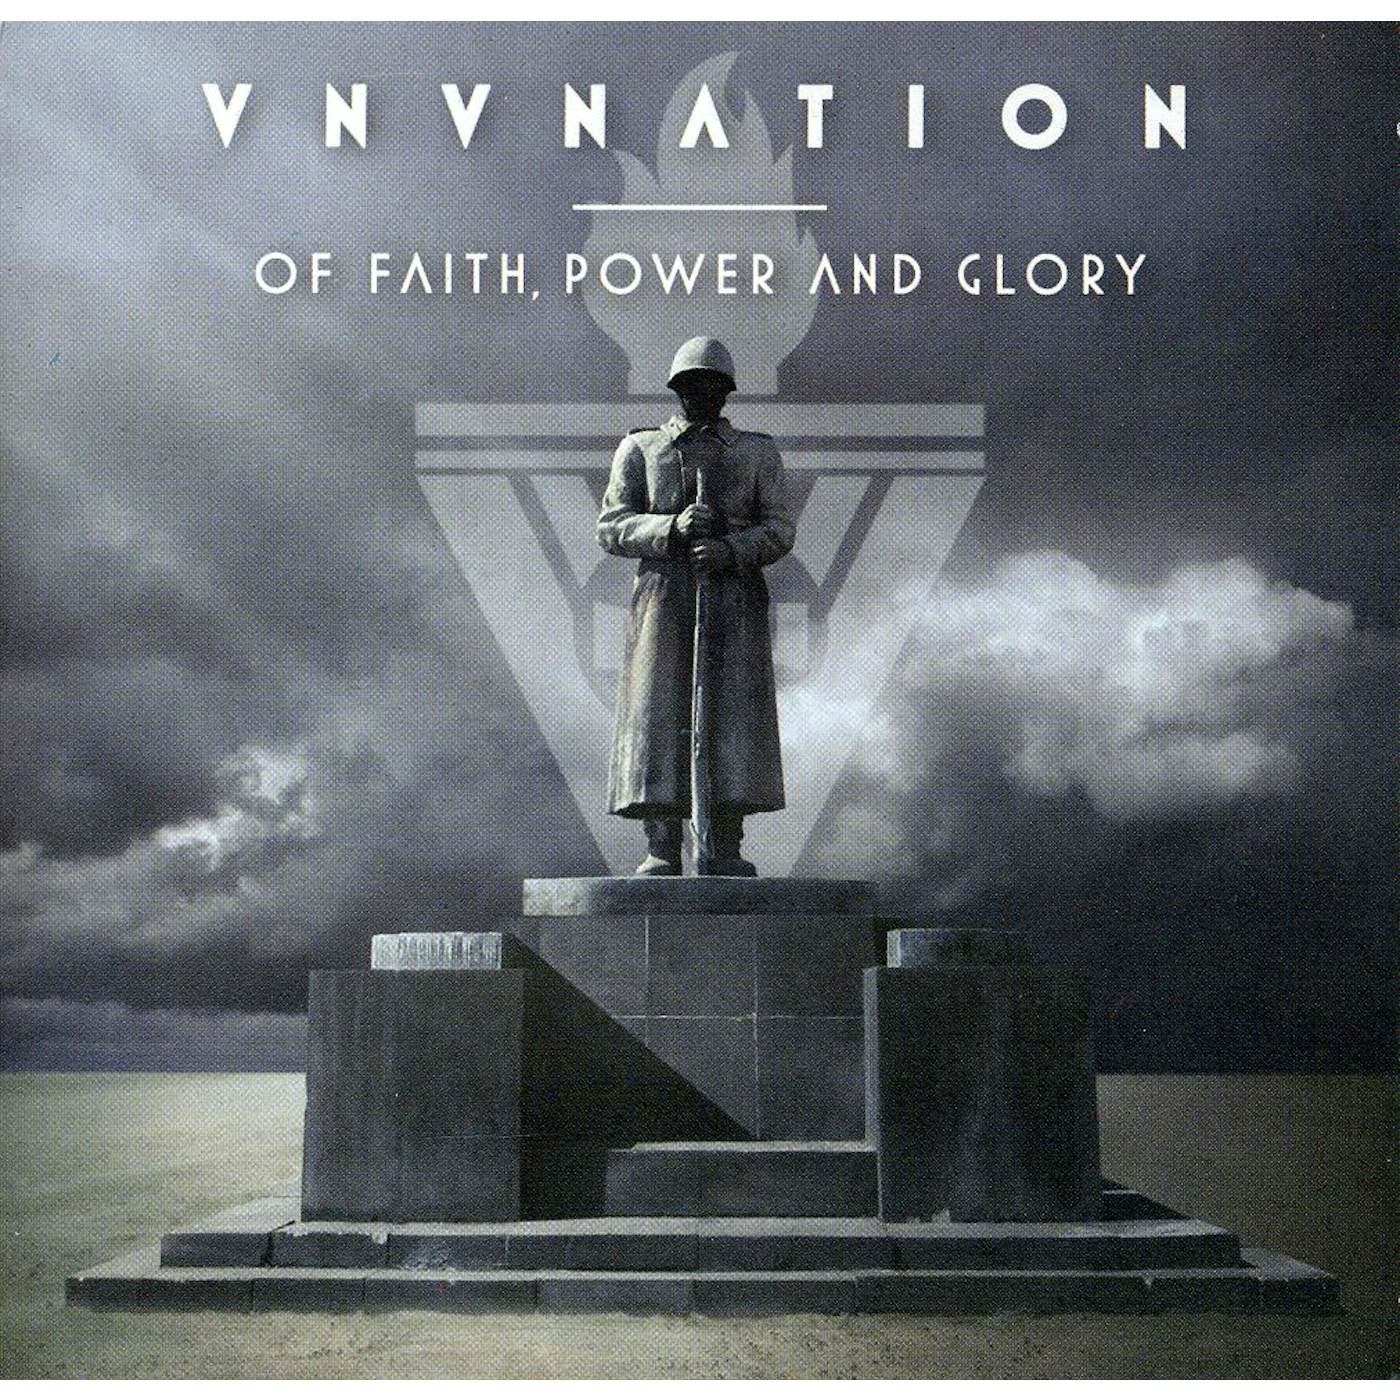 VNV Nation OF FAITH POWER AND GLORY CD